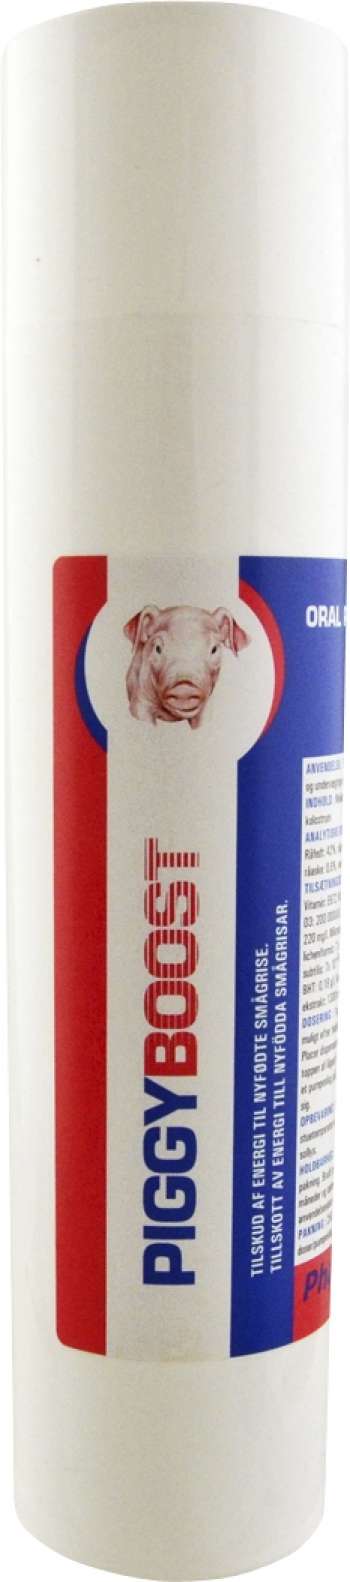 Näringstillskott Piggyboost, 250 ml